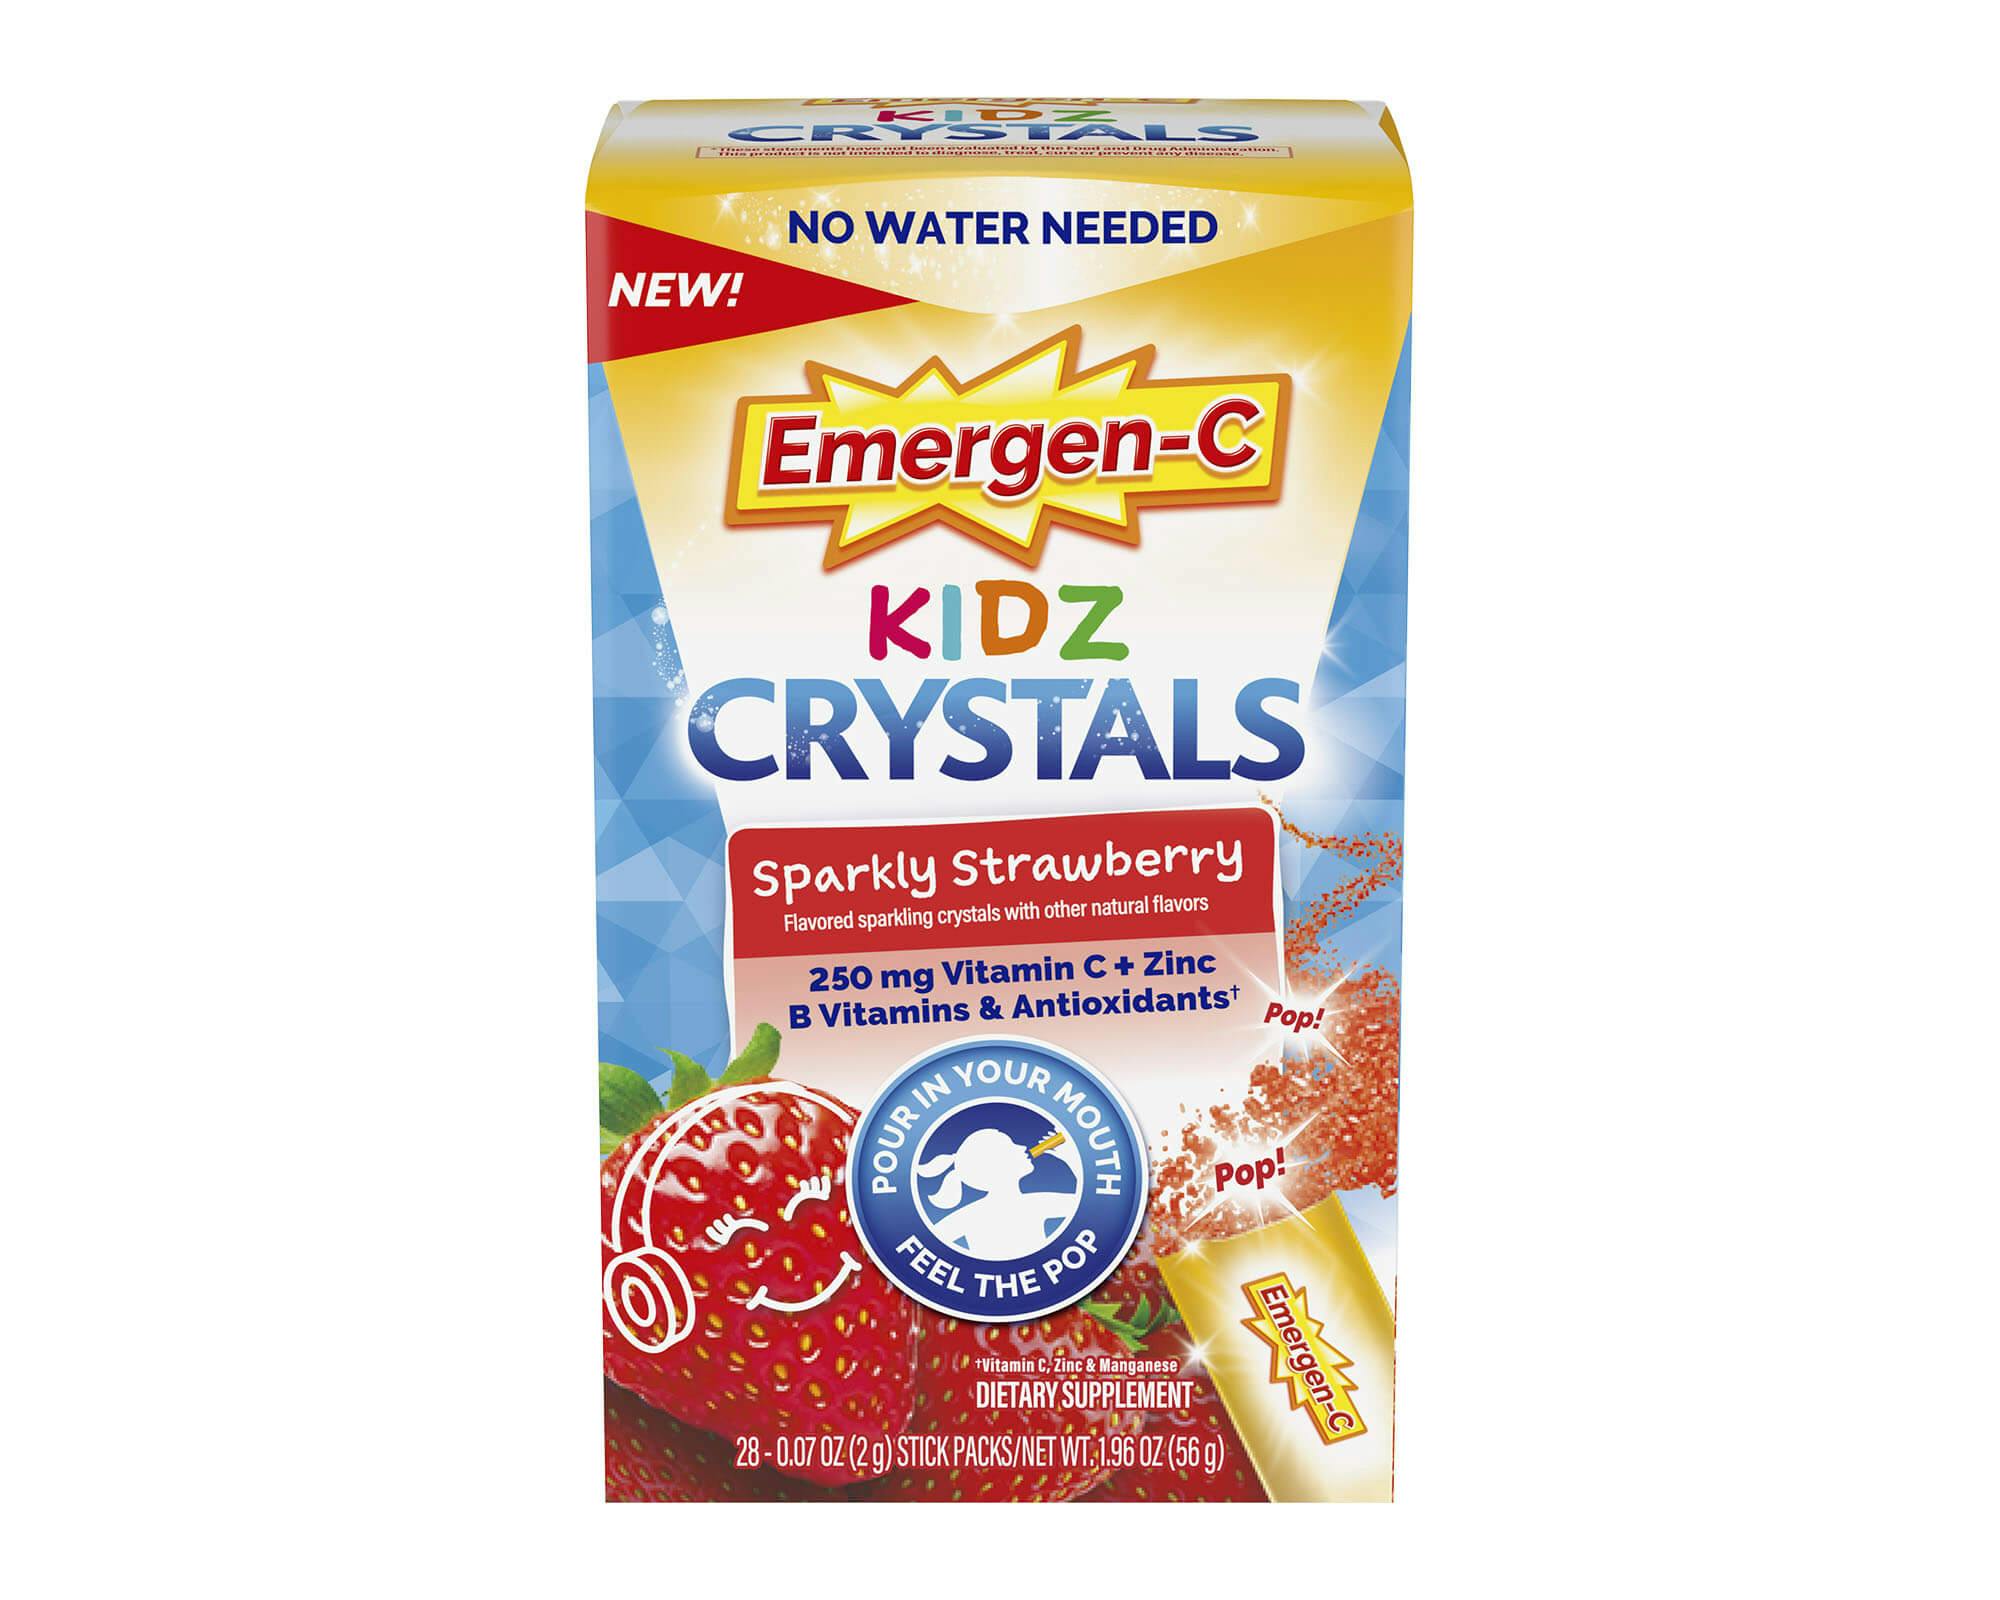 Emergen-C Kidz Crystals Sparkly Strawberry product